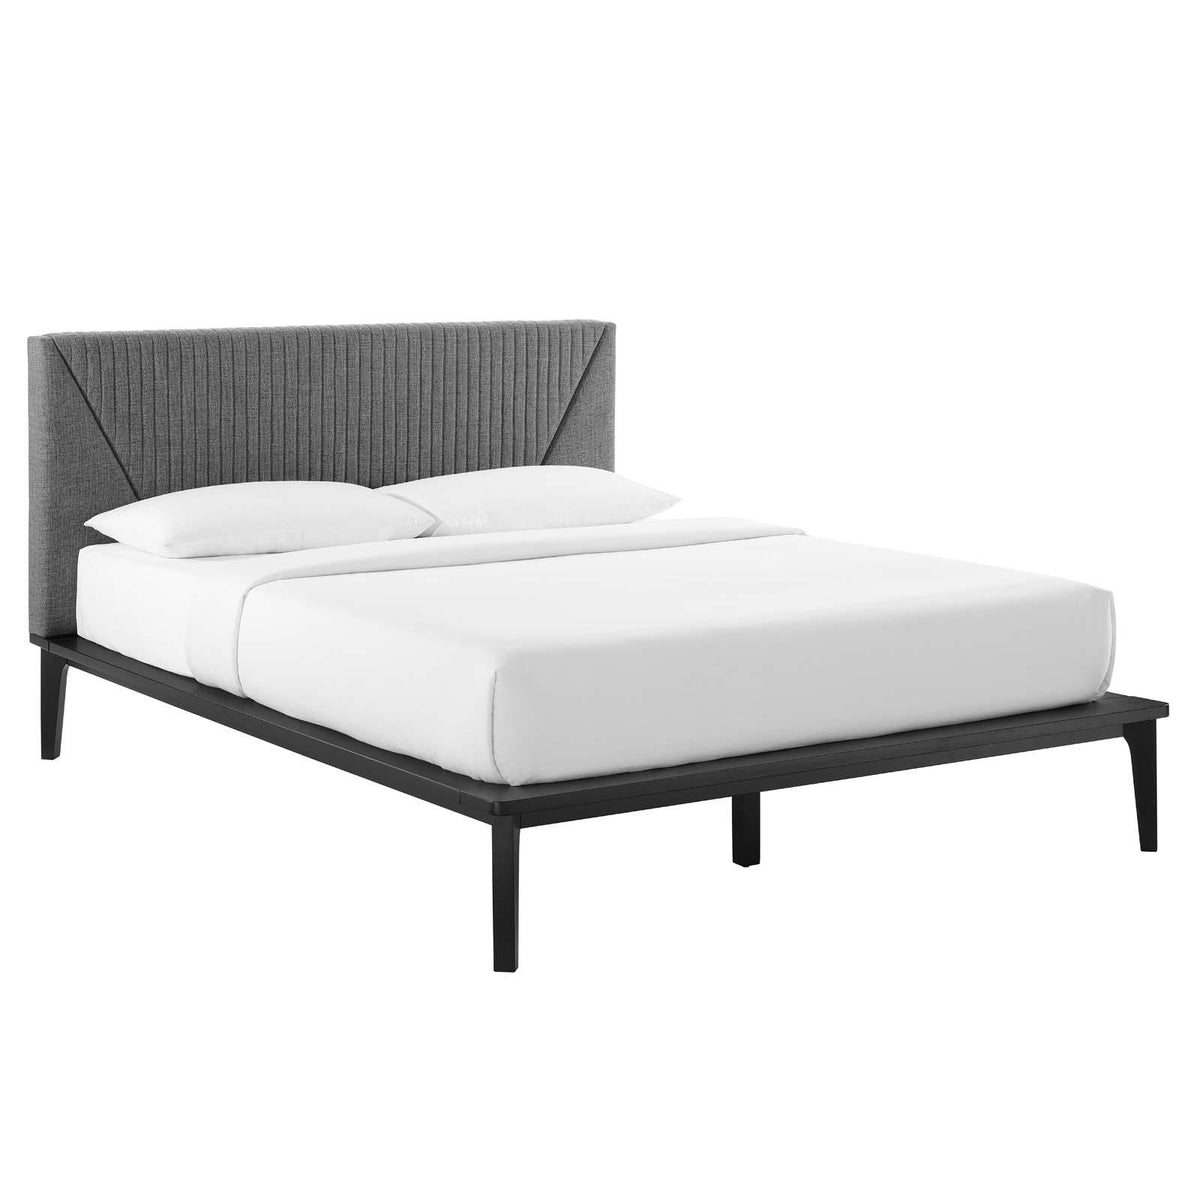 Modway Furniture Modern Dakota 4 Piece Upholstered Bedroom Set - MOD-6963